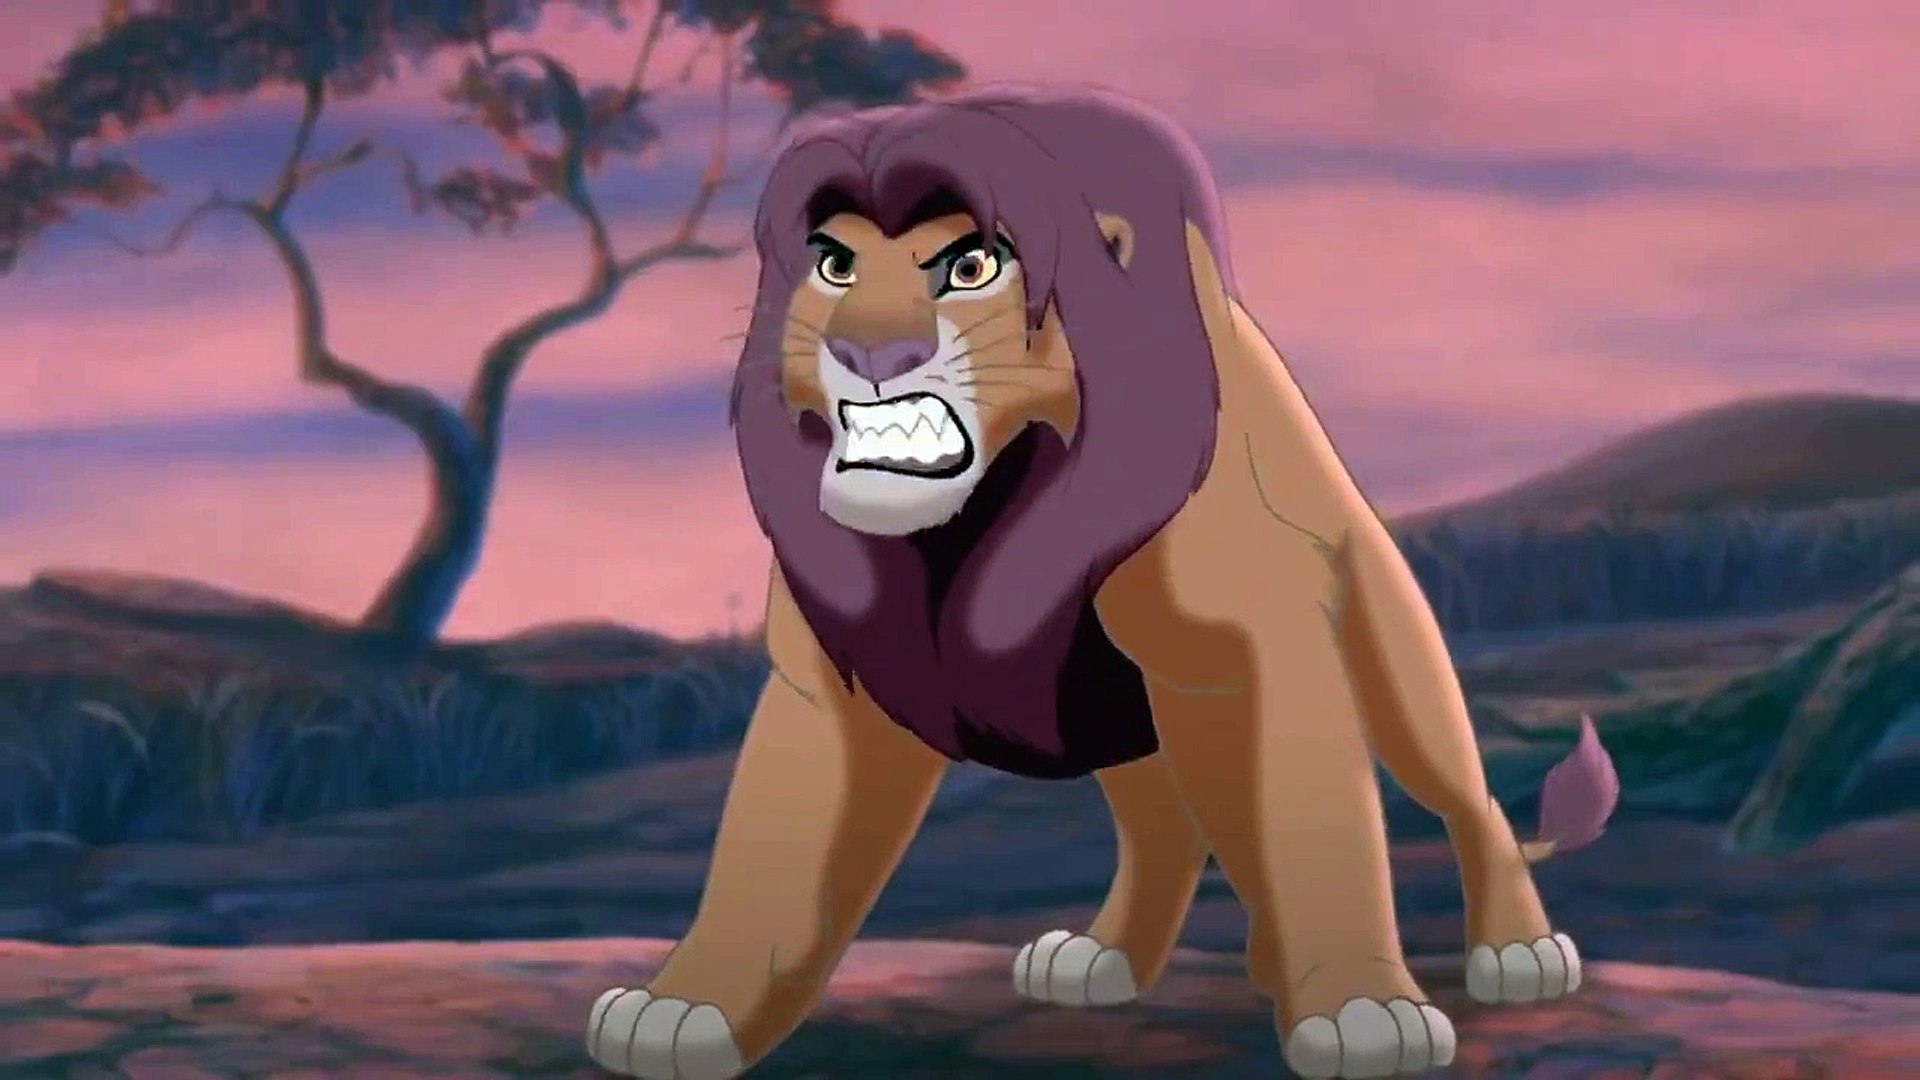 kovu lion king screenshots